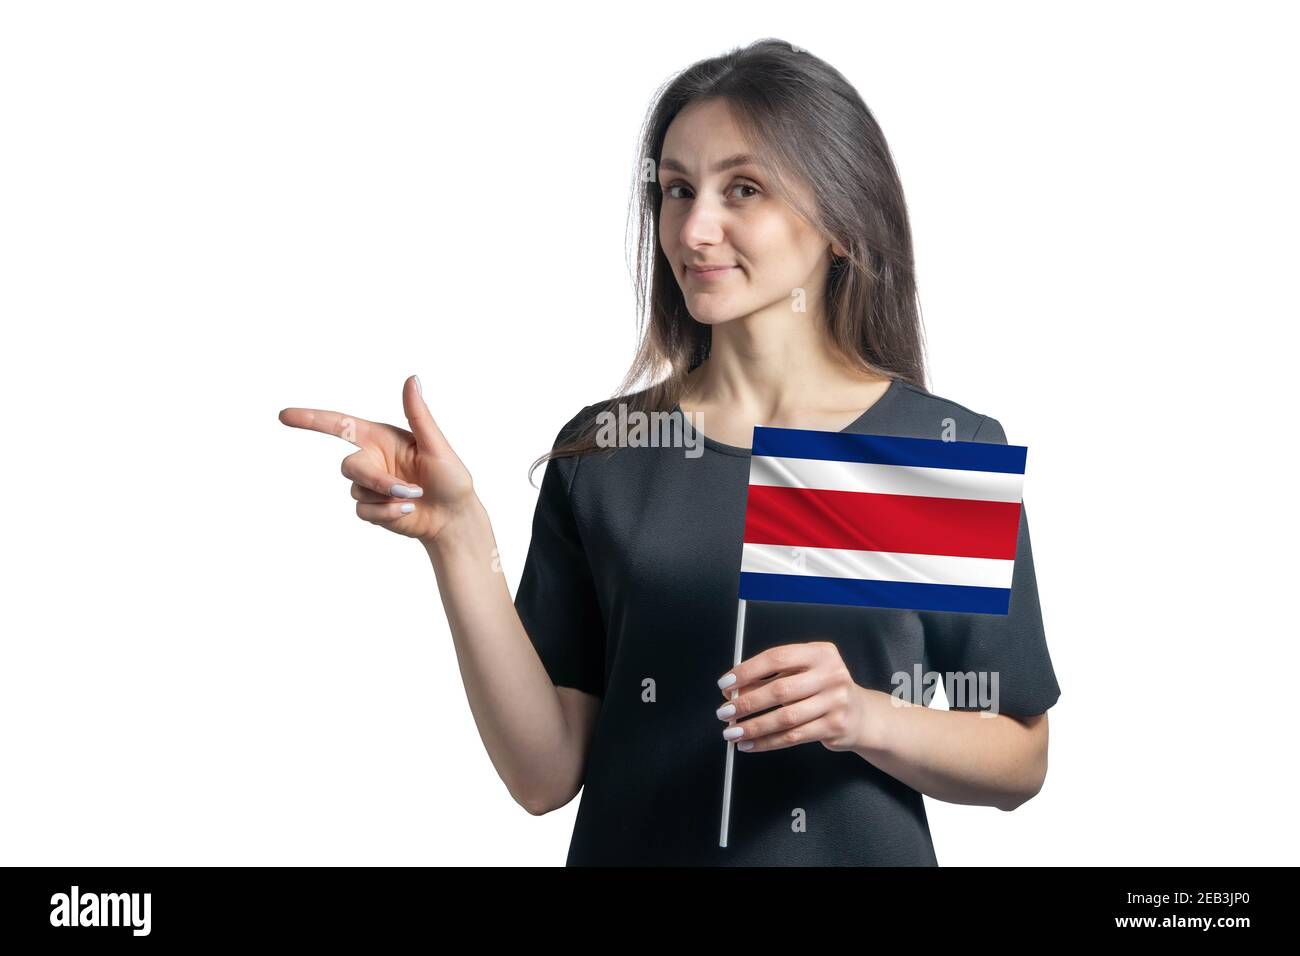 Glückliche junge weiße Frau hält Flagge Costa Rica und zeigt nach links isoliert auf weißem Hintergrund. Stockfoto